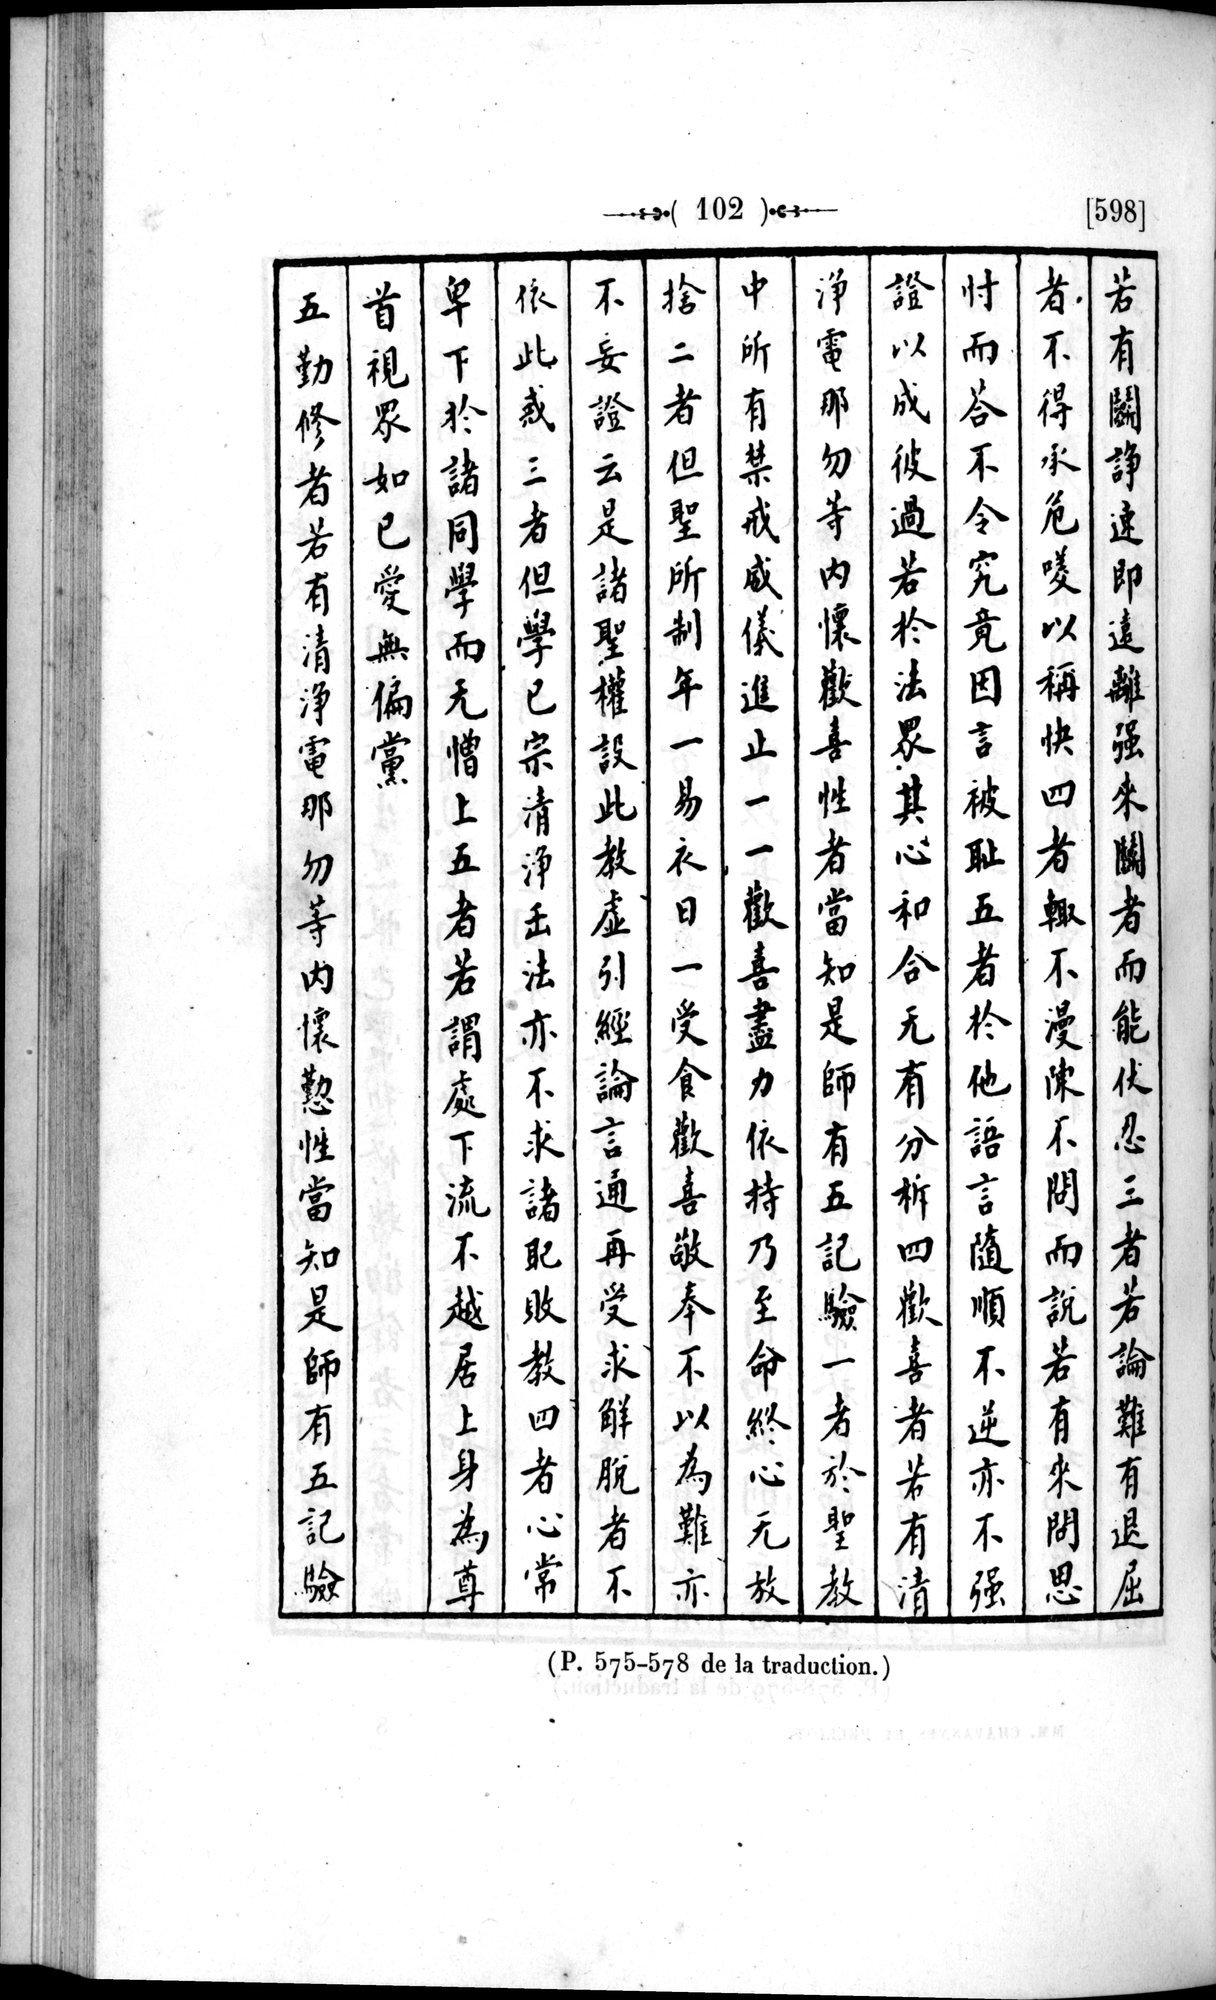 Un traité manichéen retrouvé en Chine : vol.1 / Page 112 (Grayscale High Resolution Image)